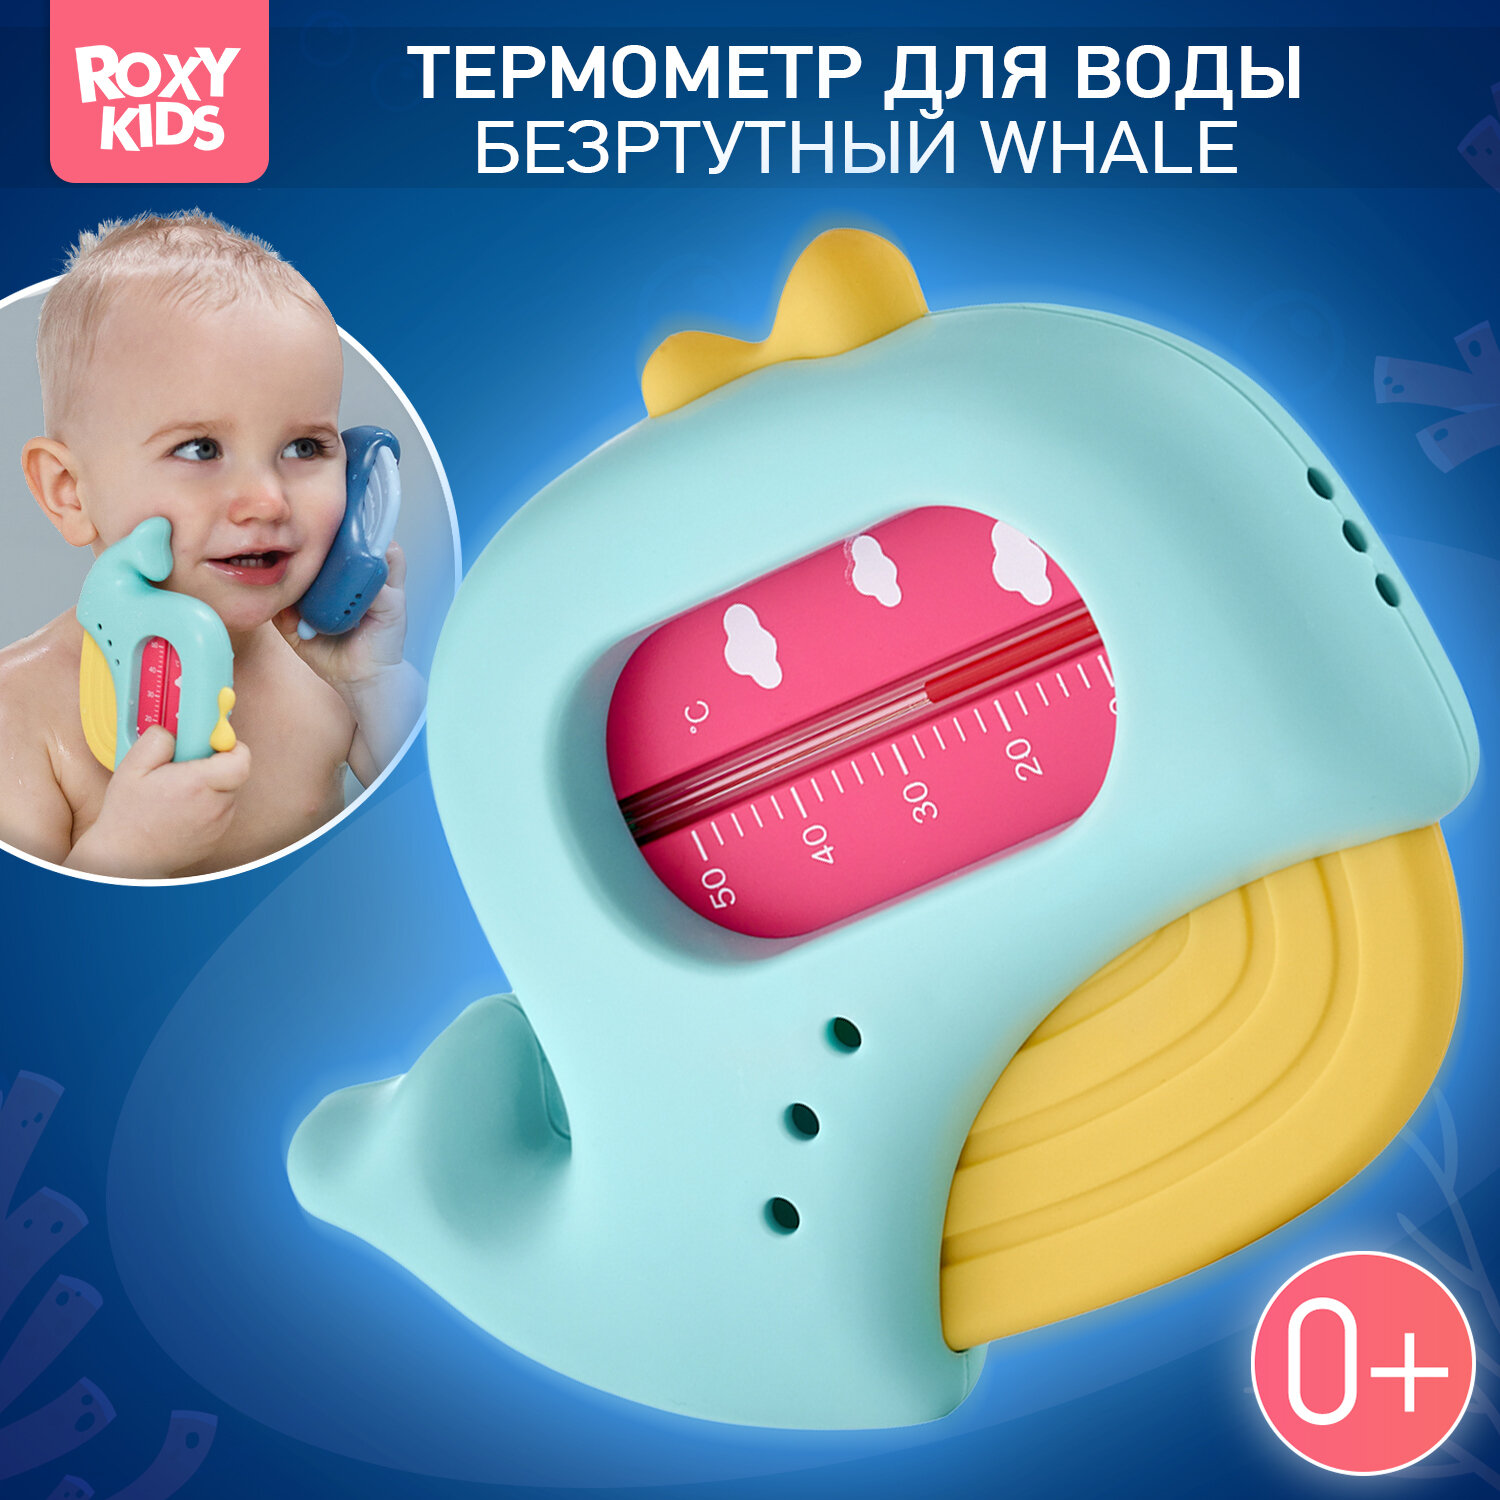 Термометр детский для воды, для купания в ванночке КИТ от ROXY-KIDS цвет голубо-желтый